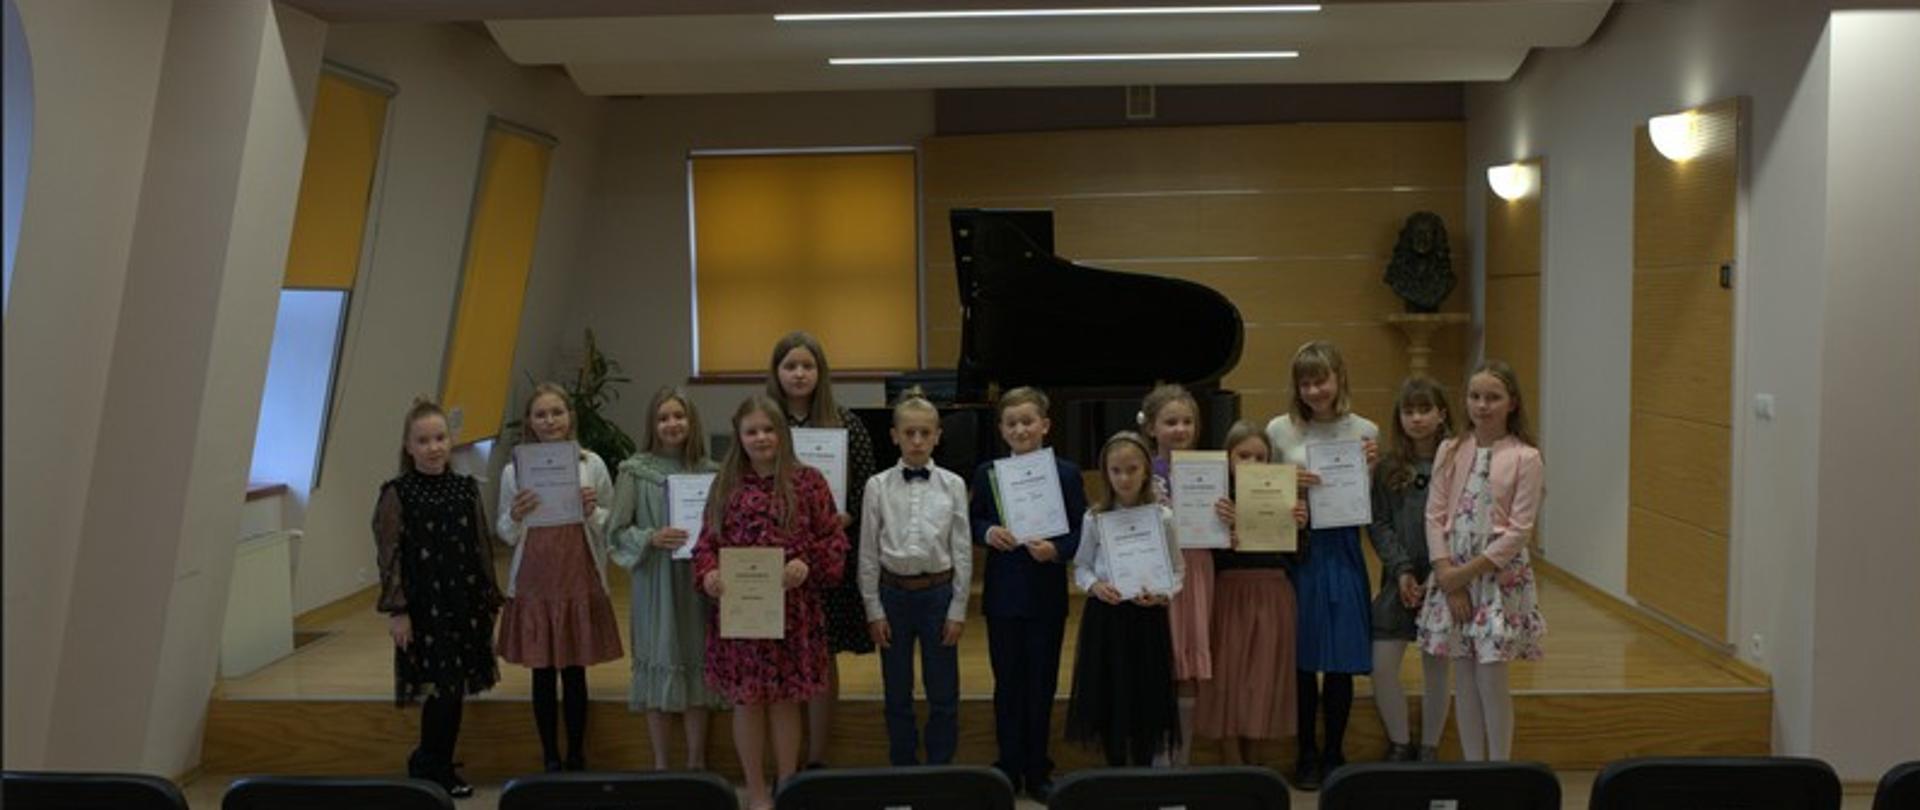 Zdjęcie przedstawia wszystkich uczestników konkursu stojących przed sceną z dyplomami. Przed dziećmi rząd krzeseł w tle fortepian.